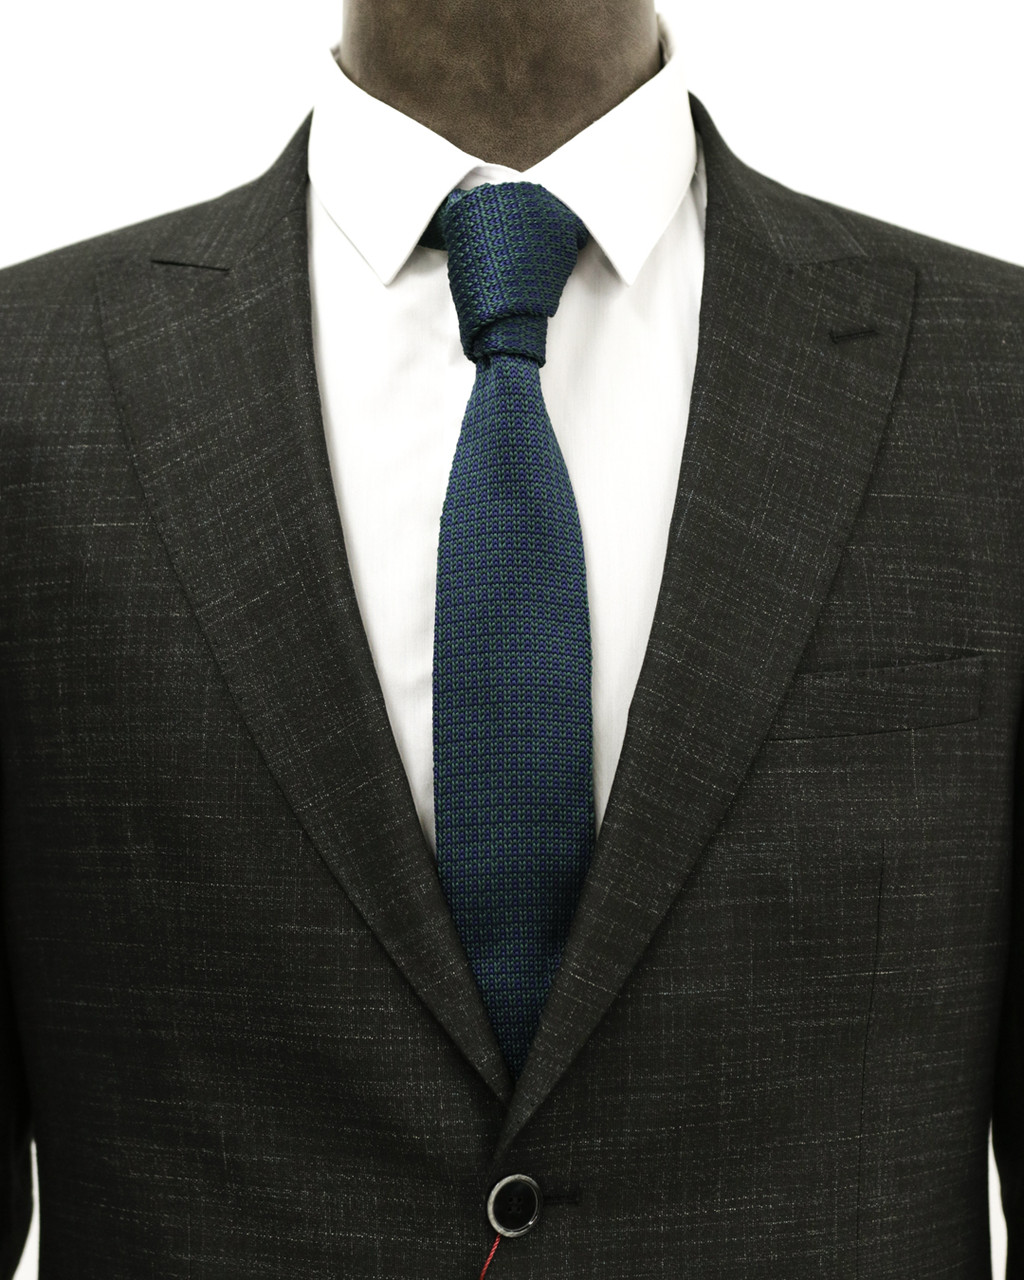 Мужской галстук «UM&H jrs14» синий (полиэстер), фото 1